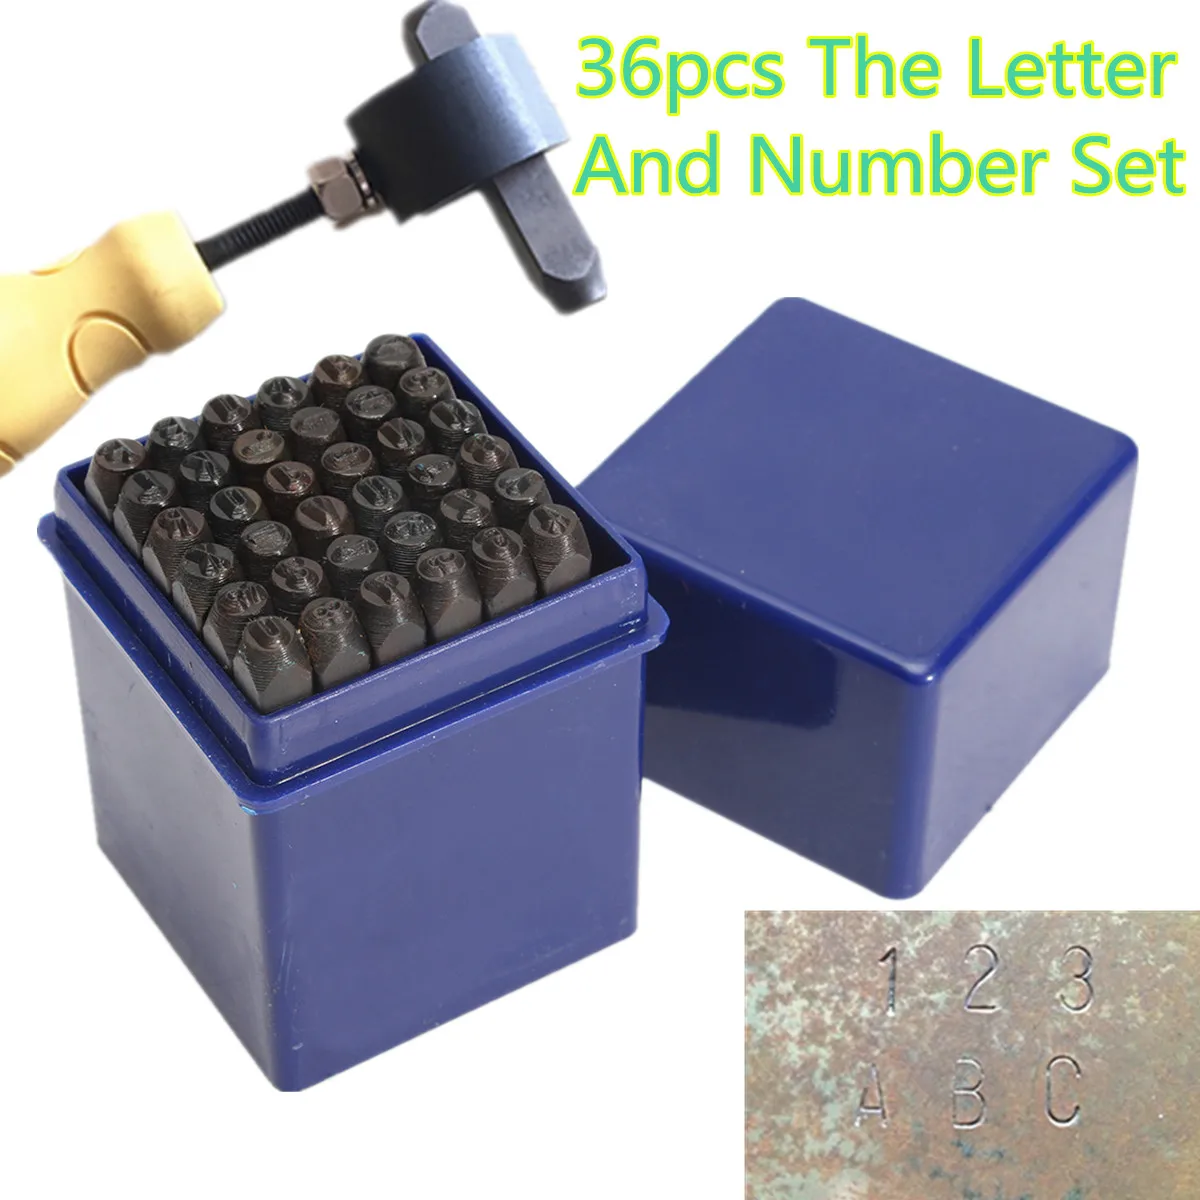 5 мм(7/32) Алфавит цифры 36 шт. буквы и цифры штампы сталь Алфавит штамповки набор для DIY пояса кожевенное ремесло инструмент